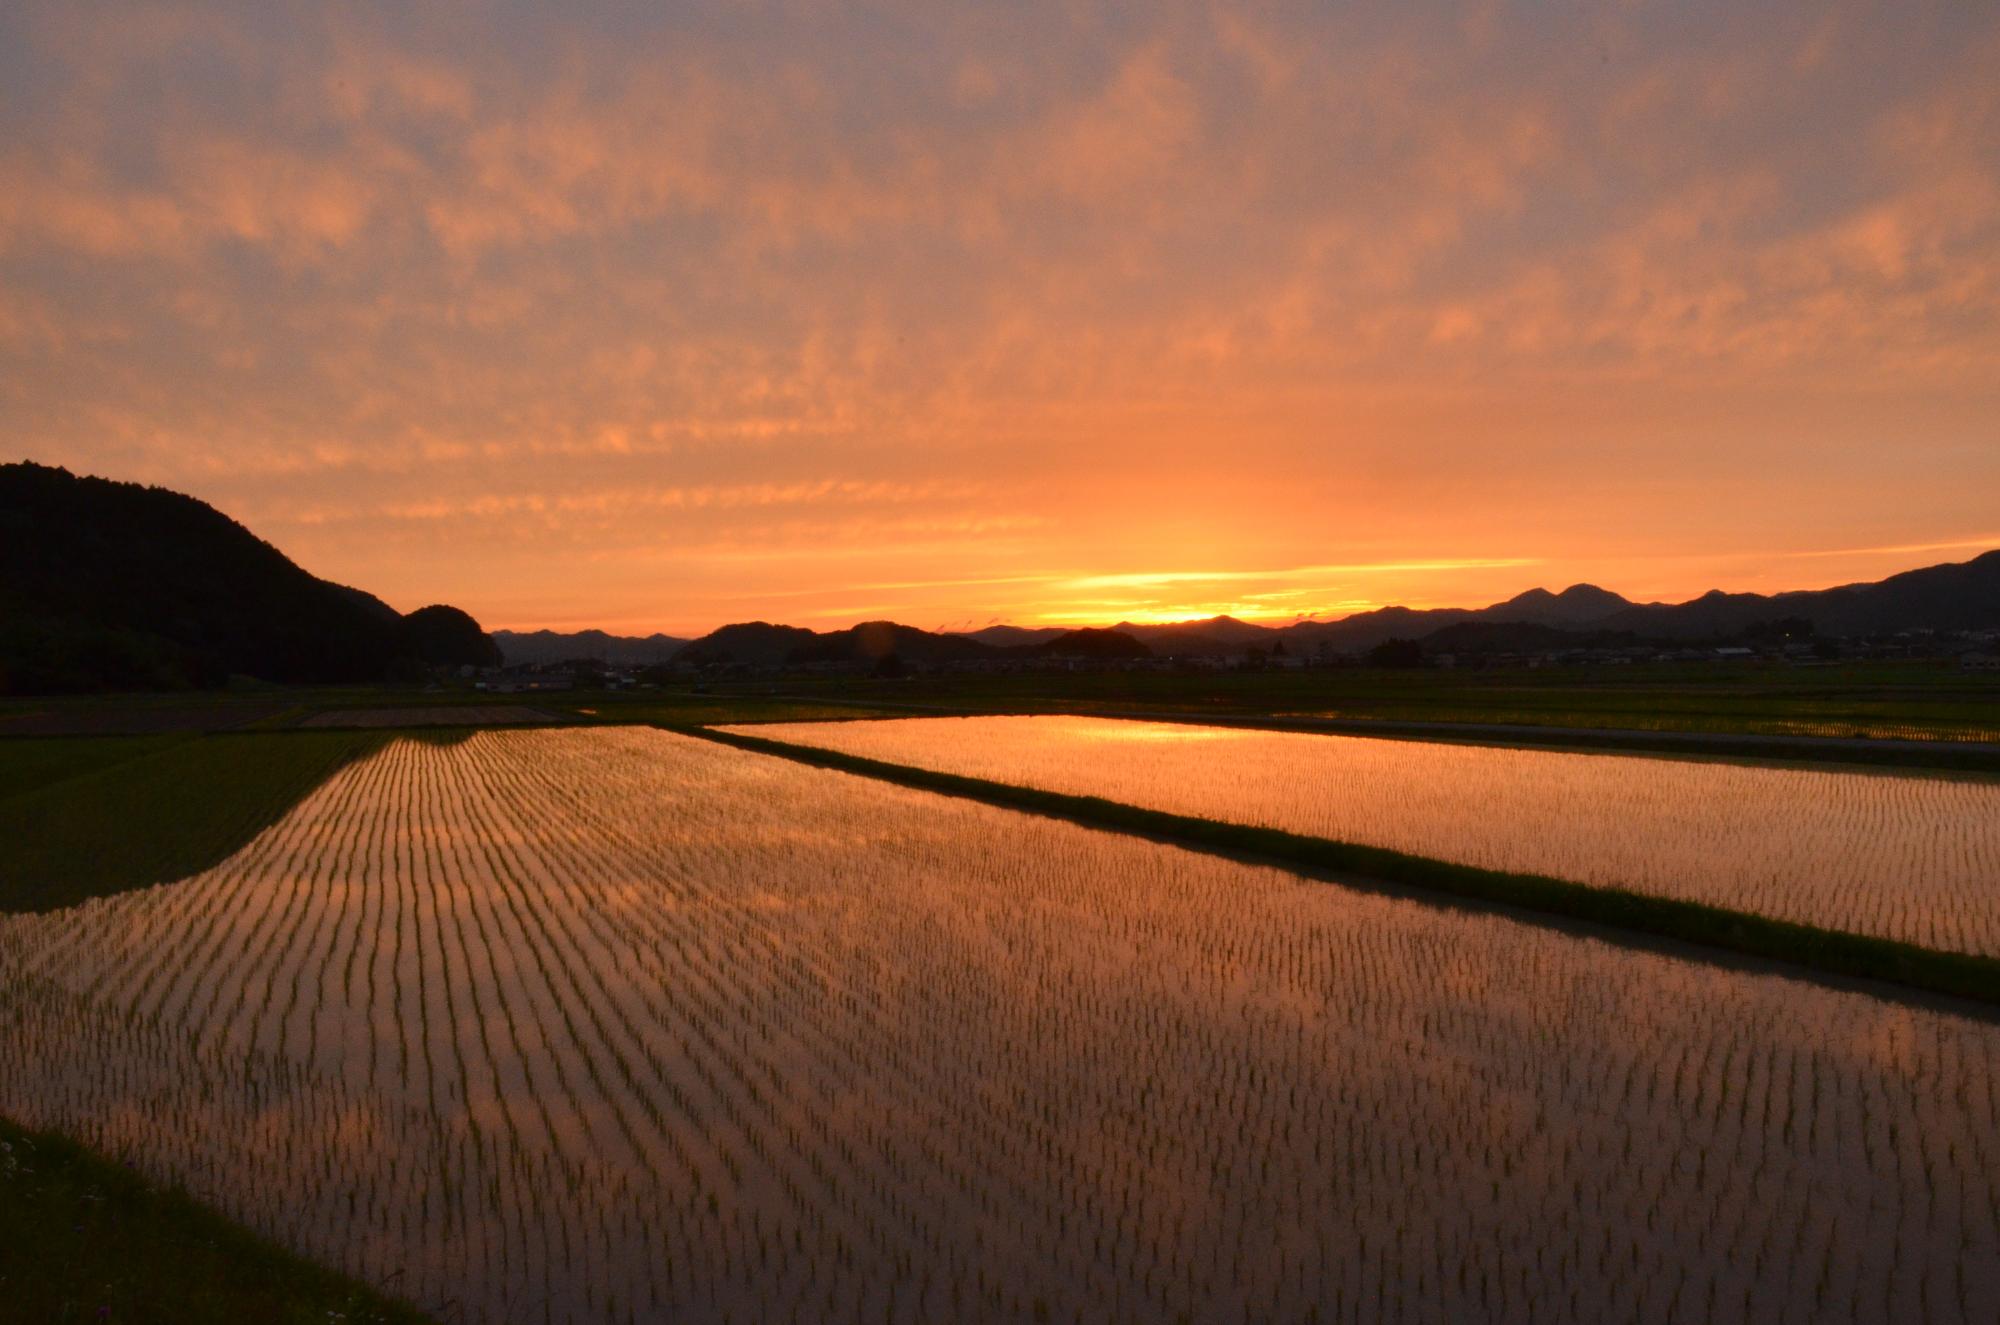 稲が育っている田んぼに夕日が沈んでいる写真。